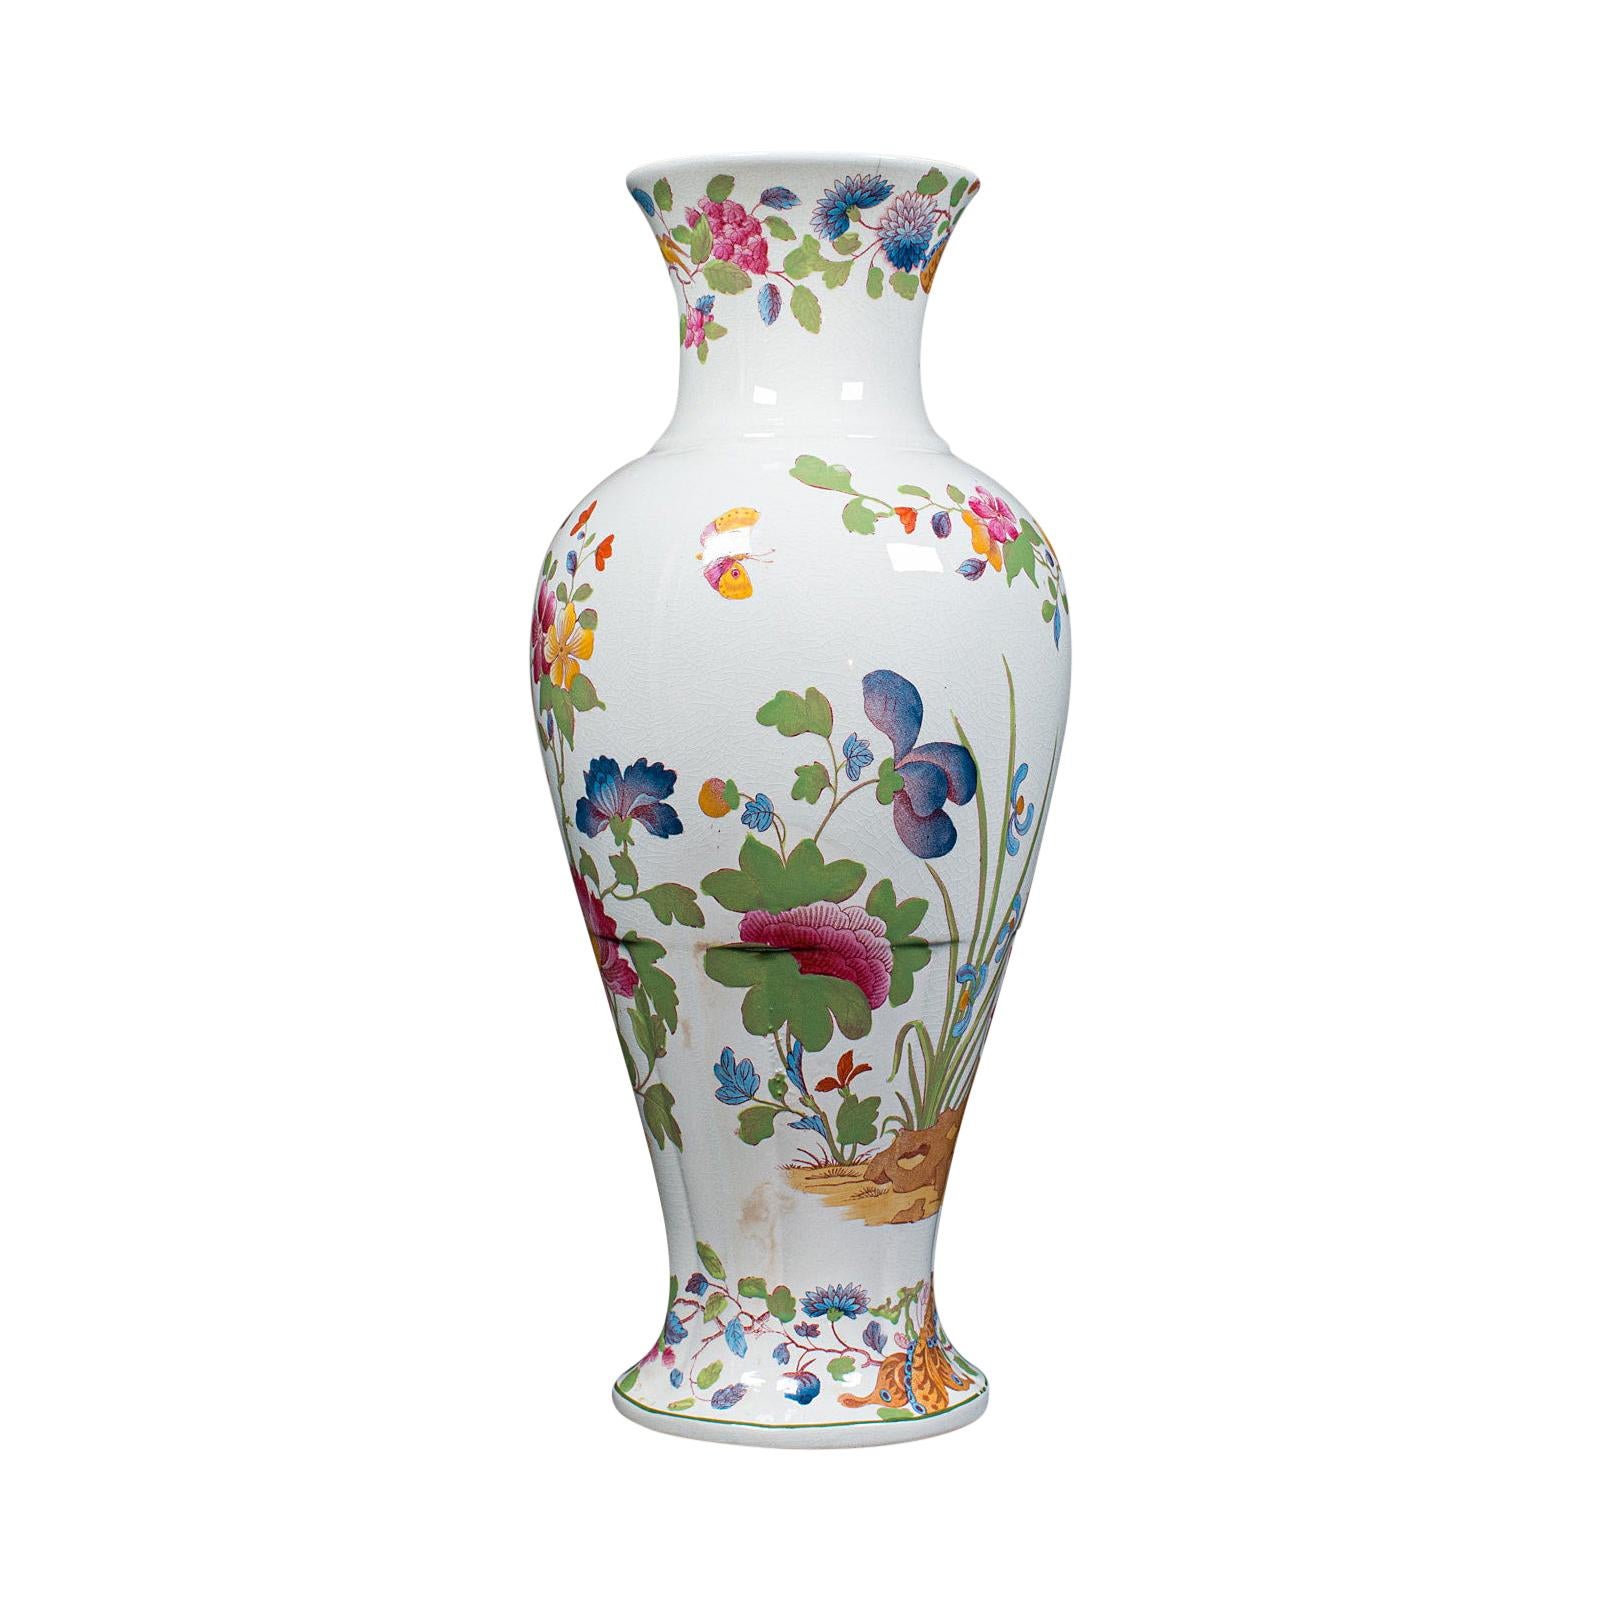 Antike Baluster Posy-Vase, englisch, Keramik, dekorativ, Blumenurne, um 1920